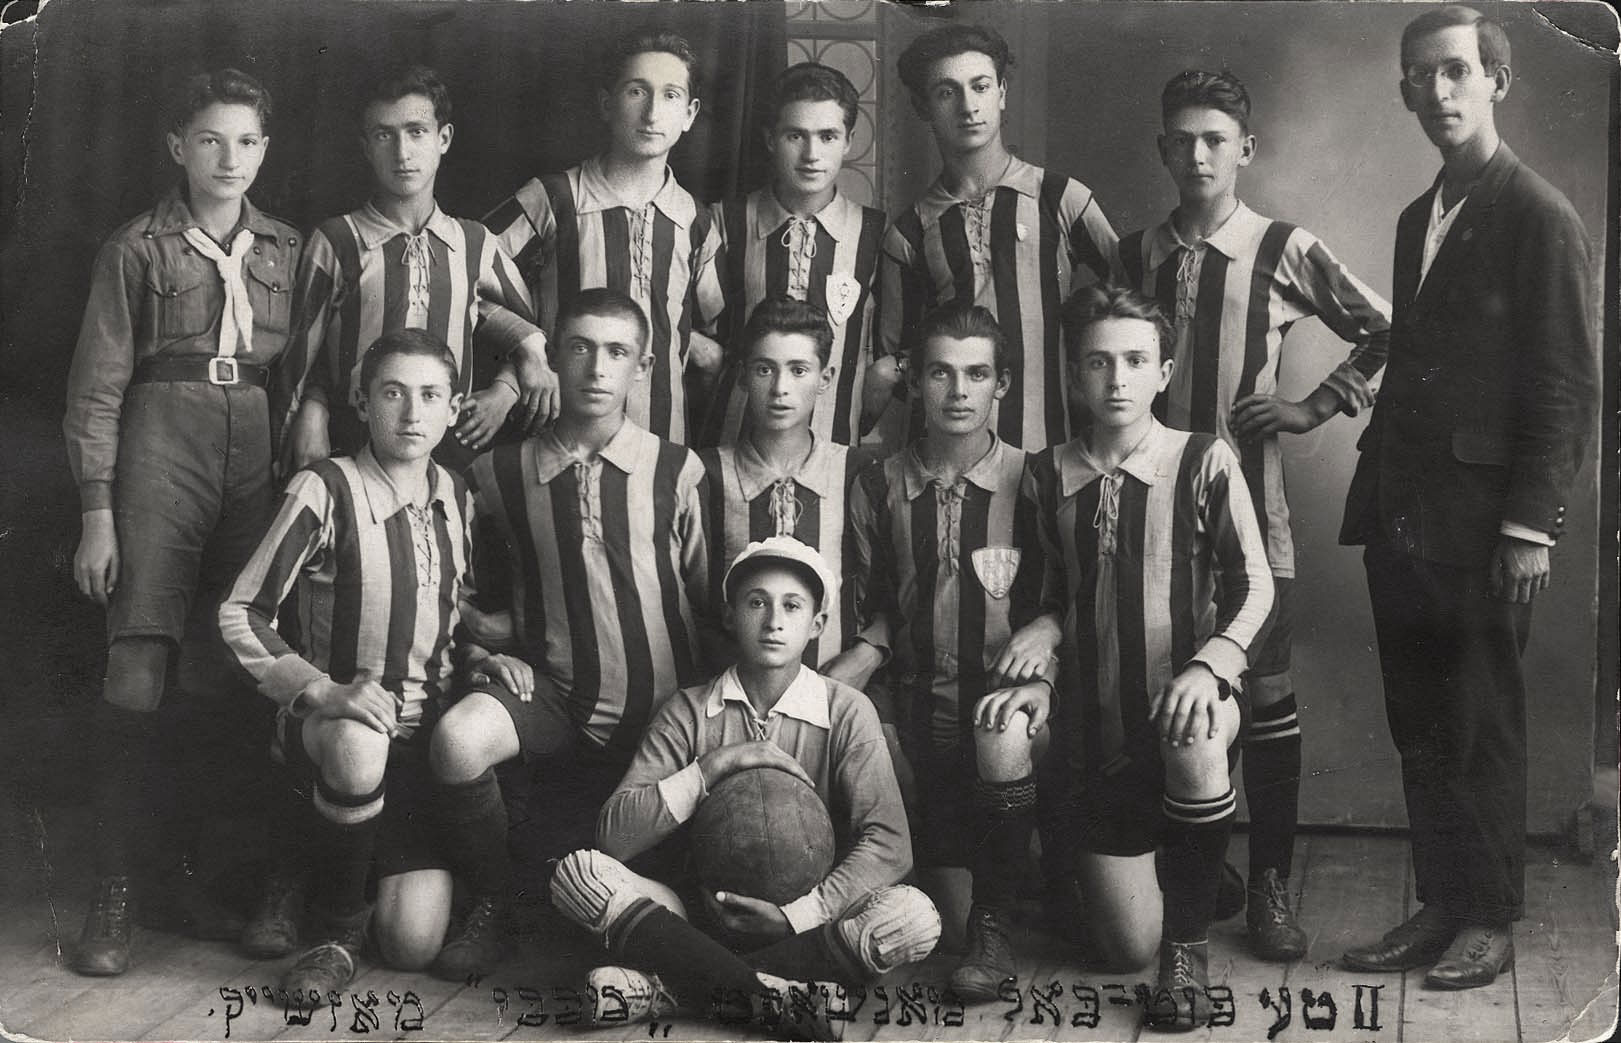 Mazeikiai, Lithuania, Prewar, a football group